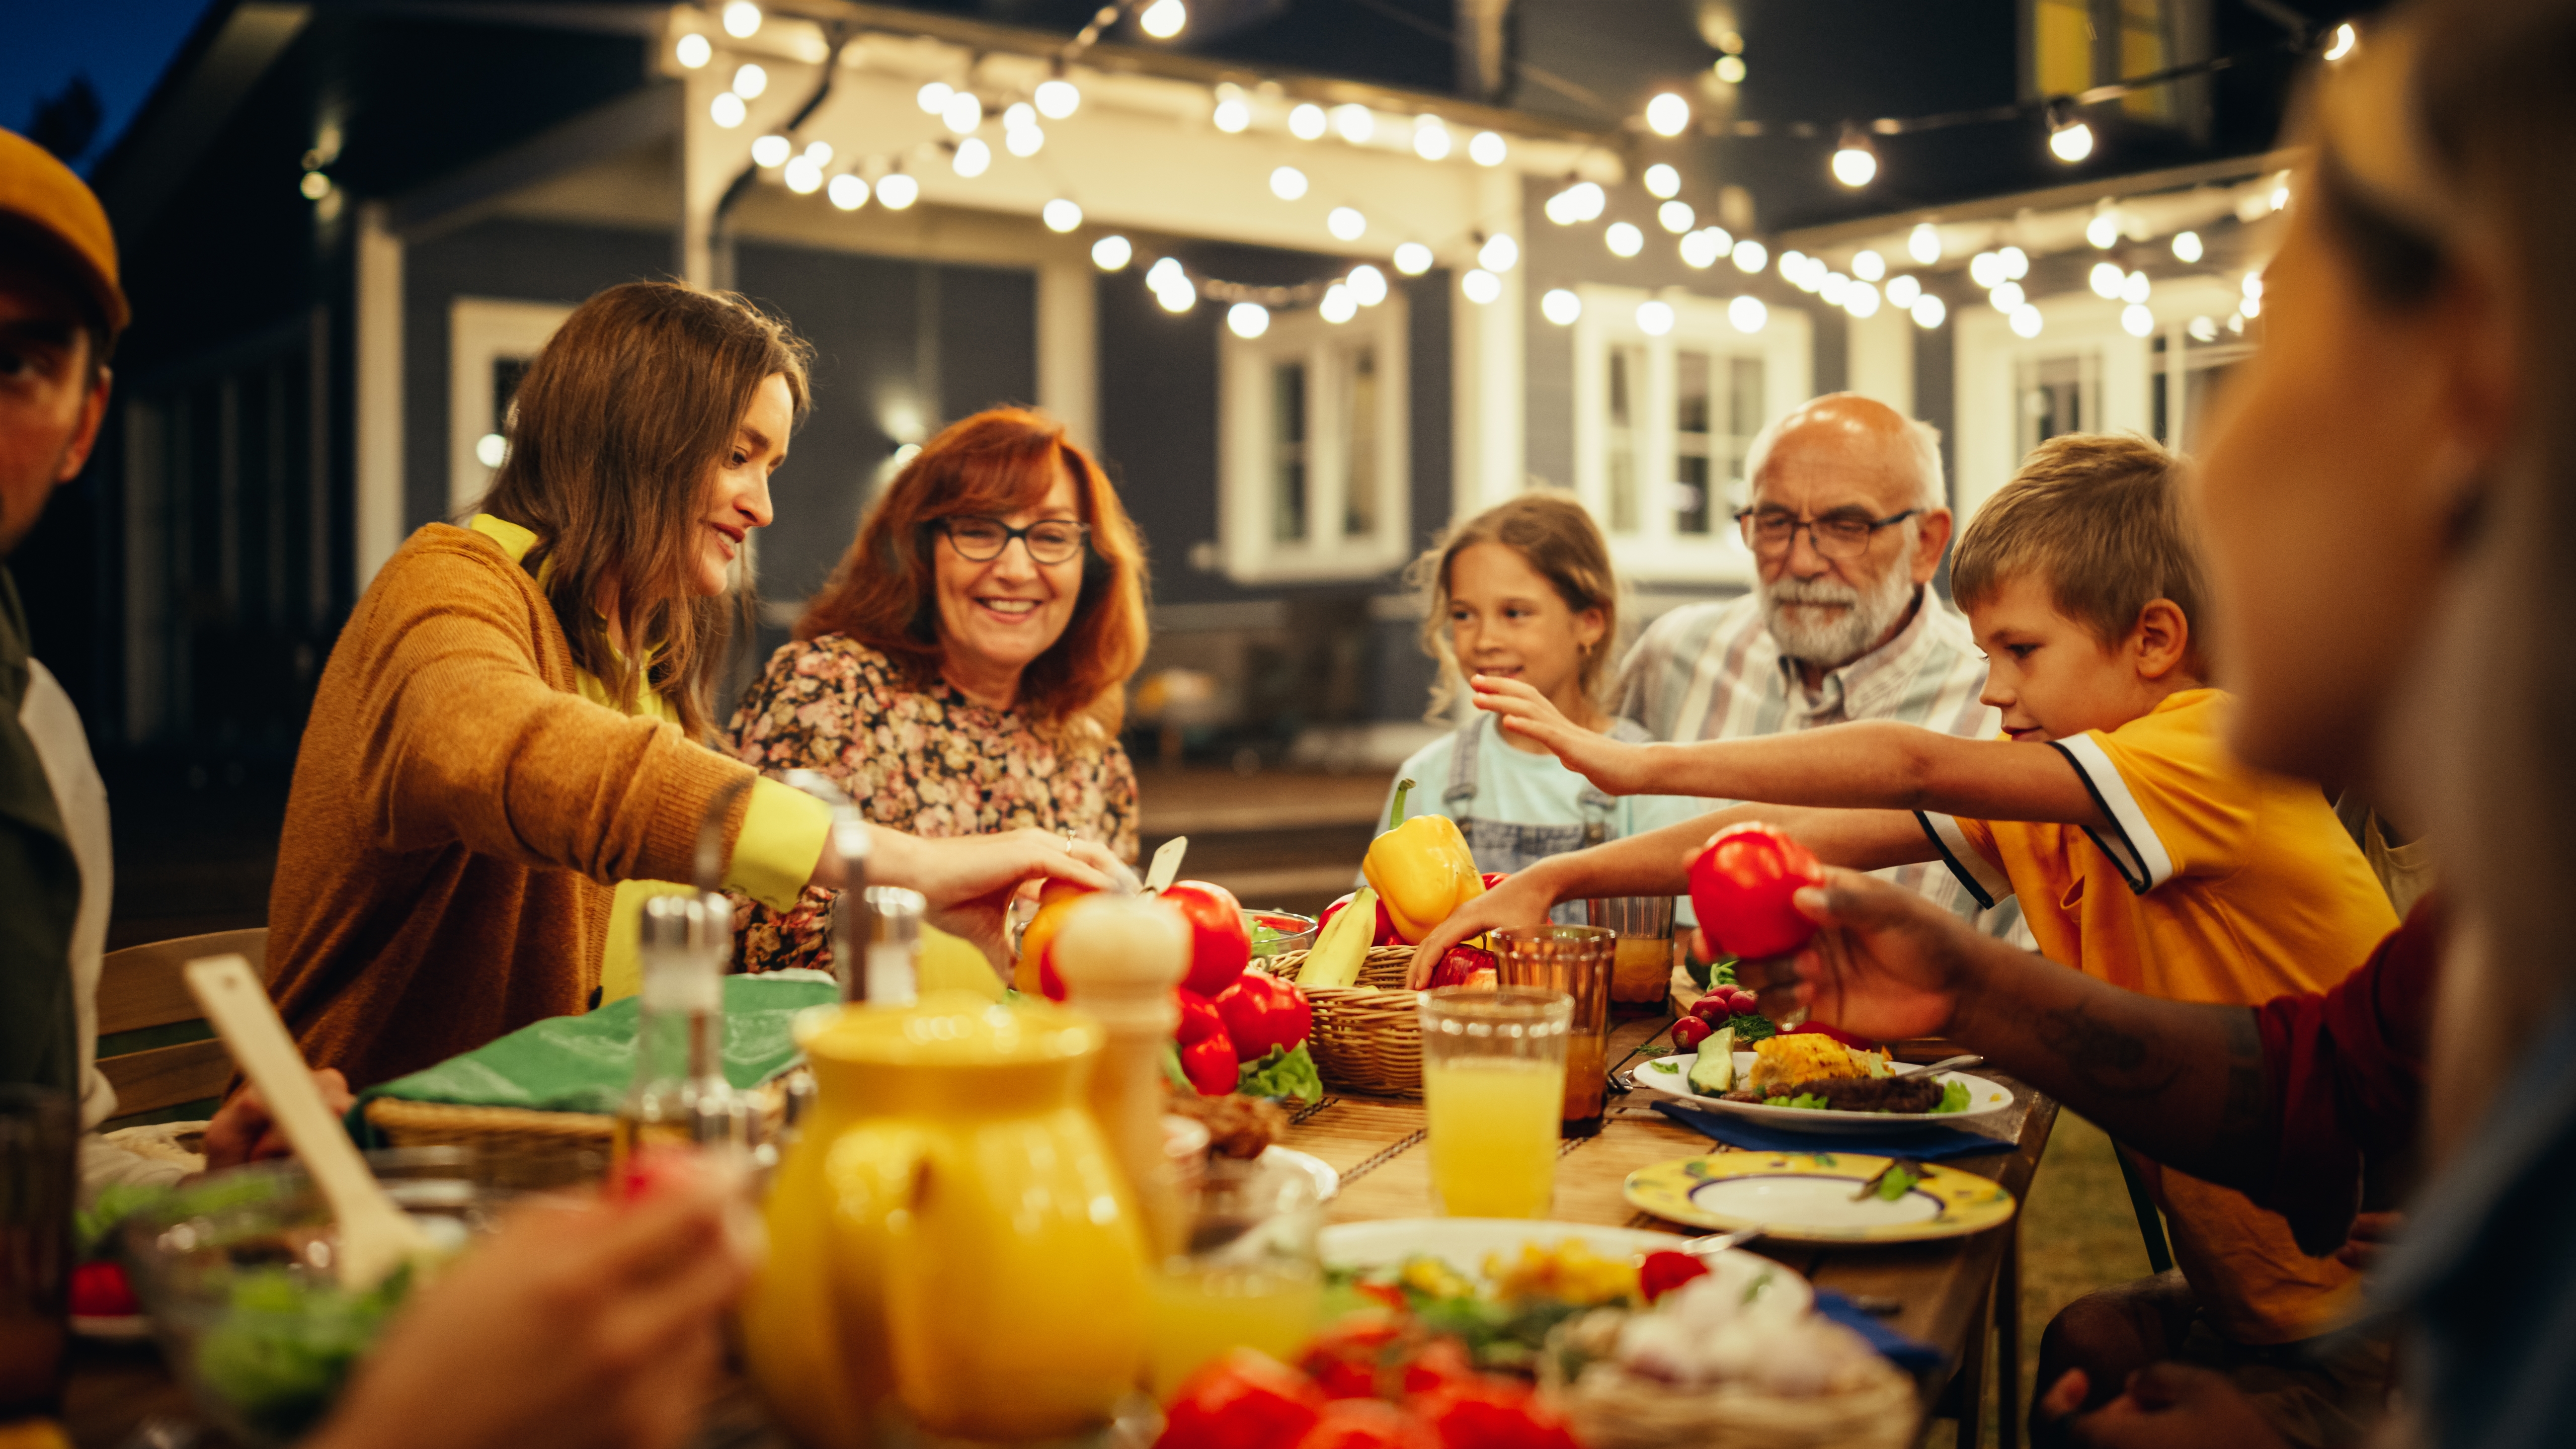 Gente sentada junta para cenar | Fuente: Shutterstock